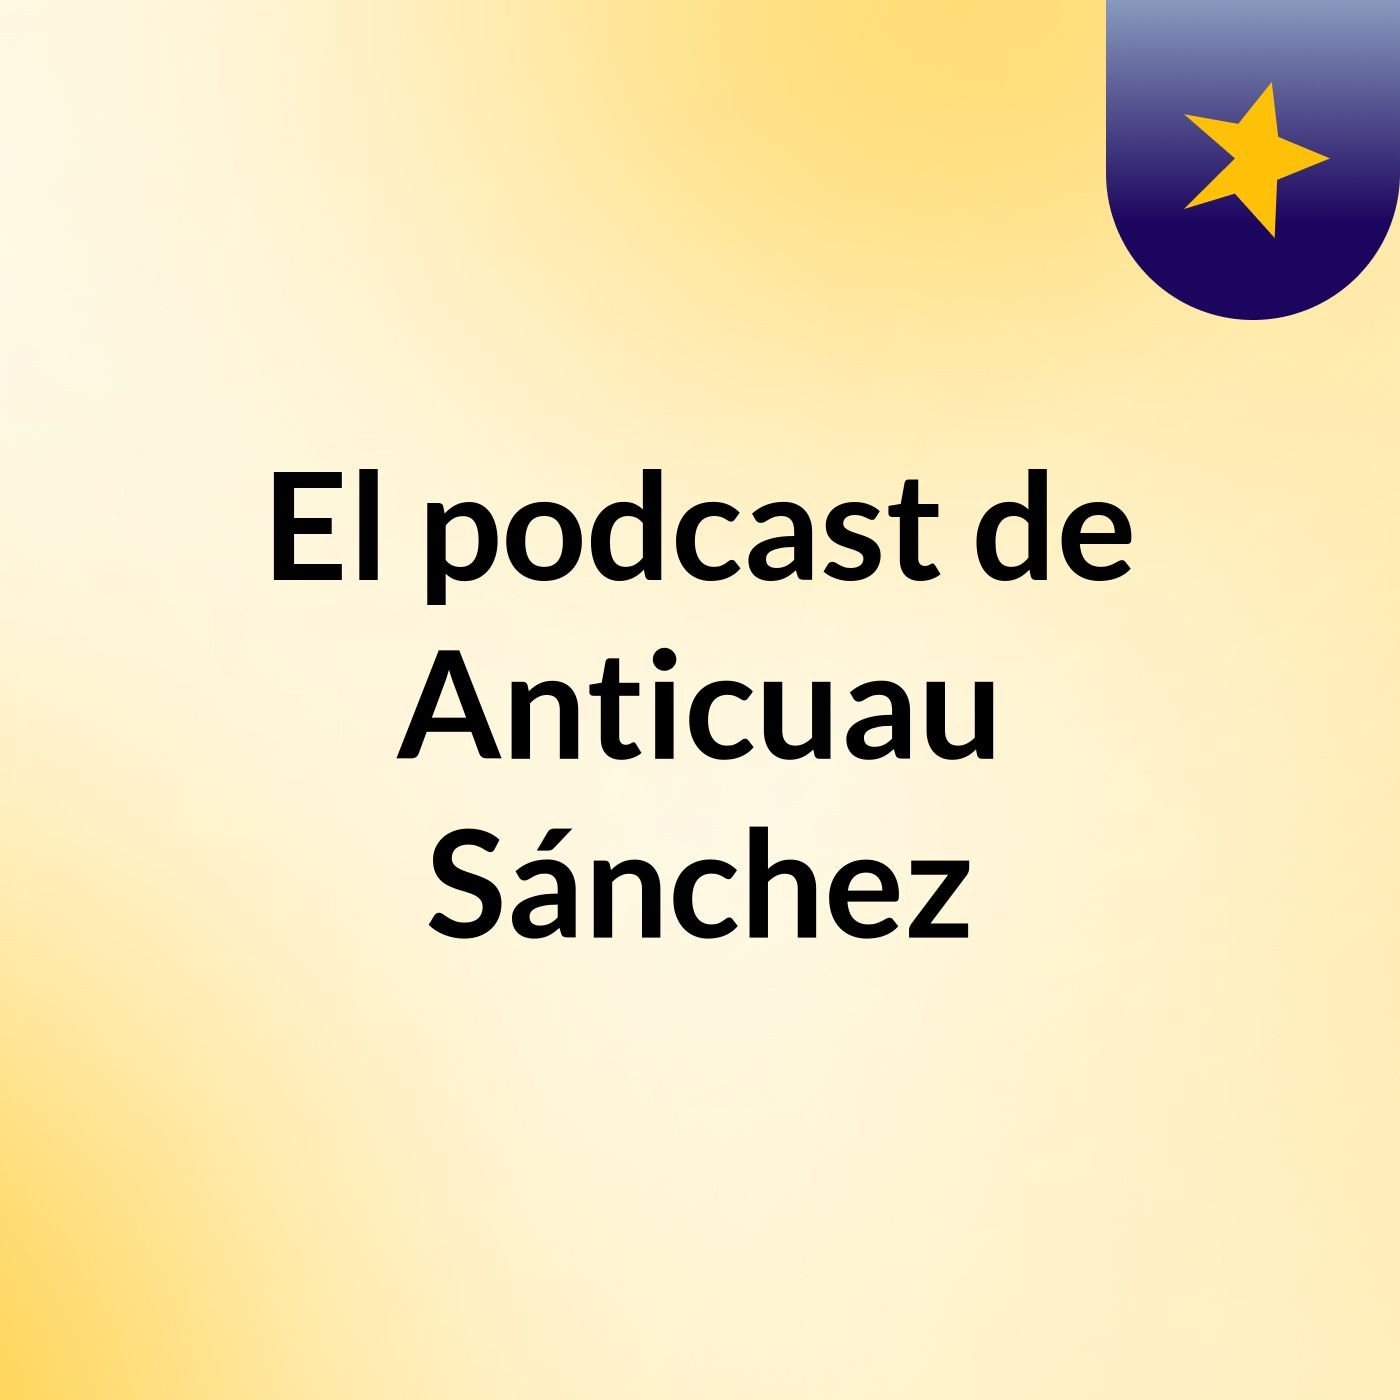 El podcast de Anticuau Sánchez